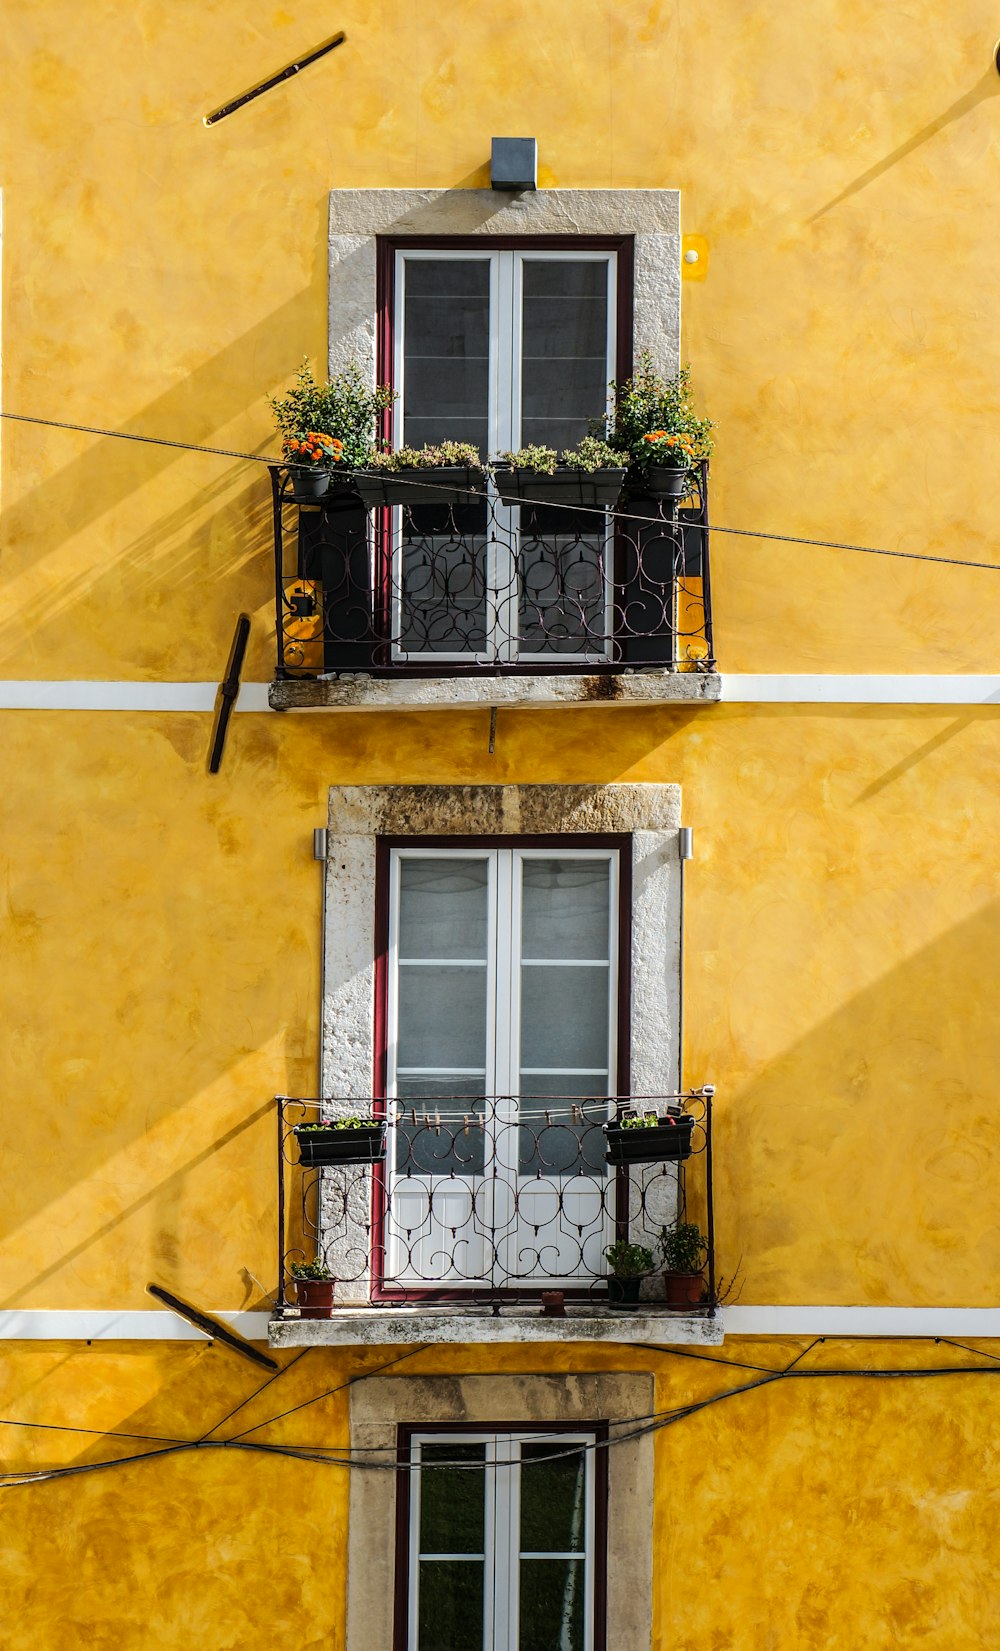 Paneles de madera blanca para ventanas y pared pintada de amarillo